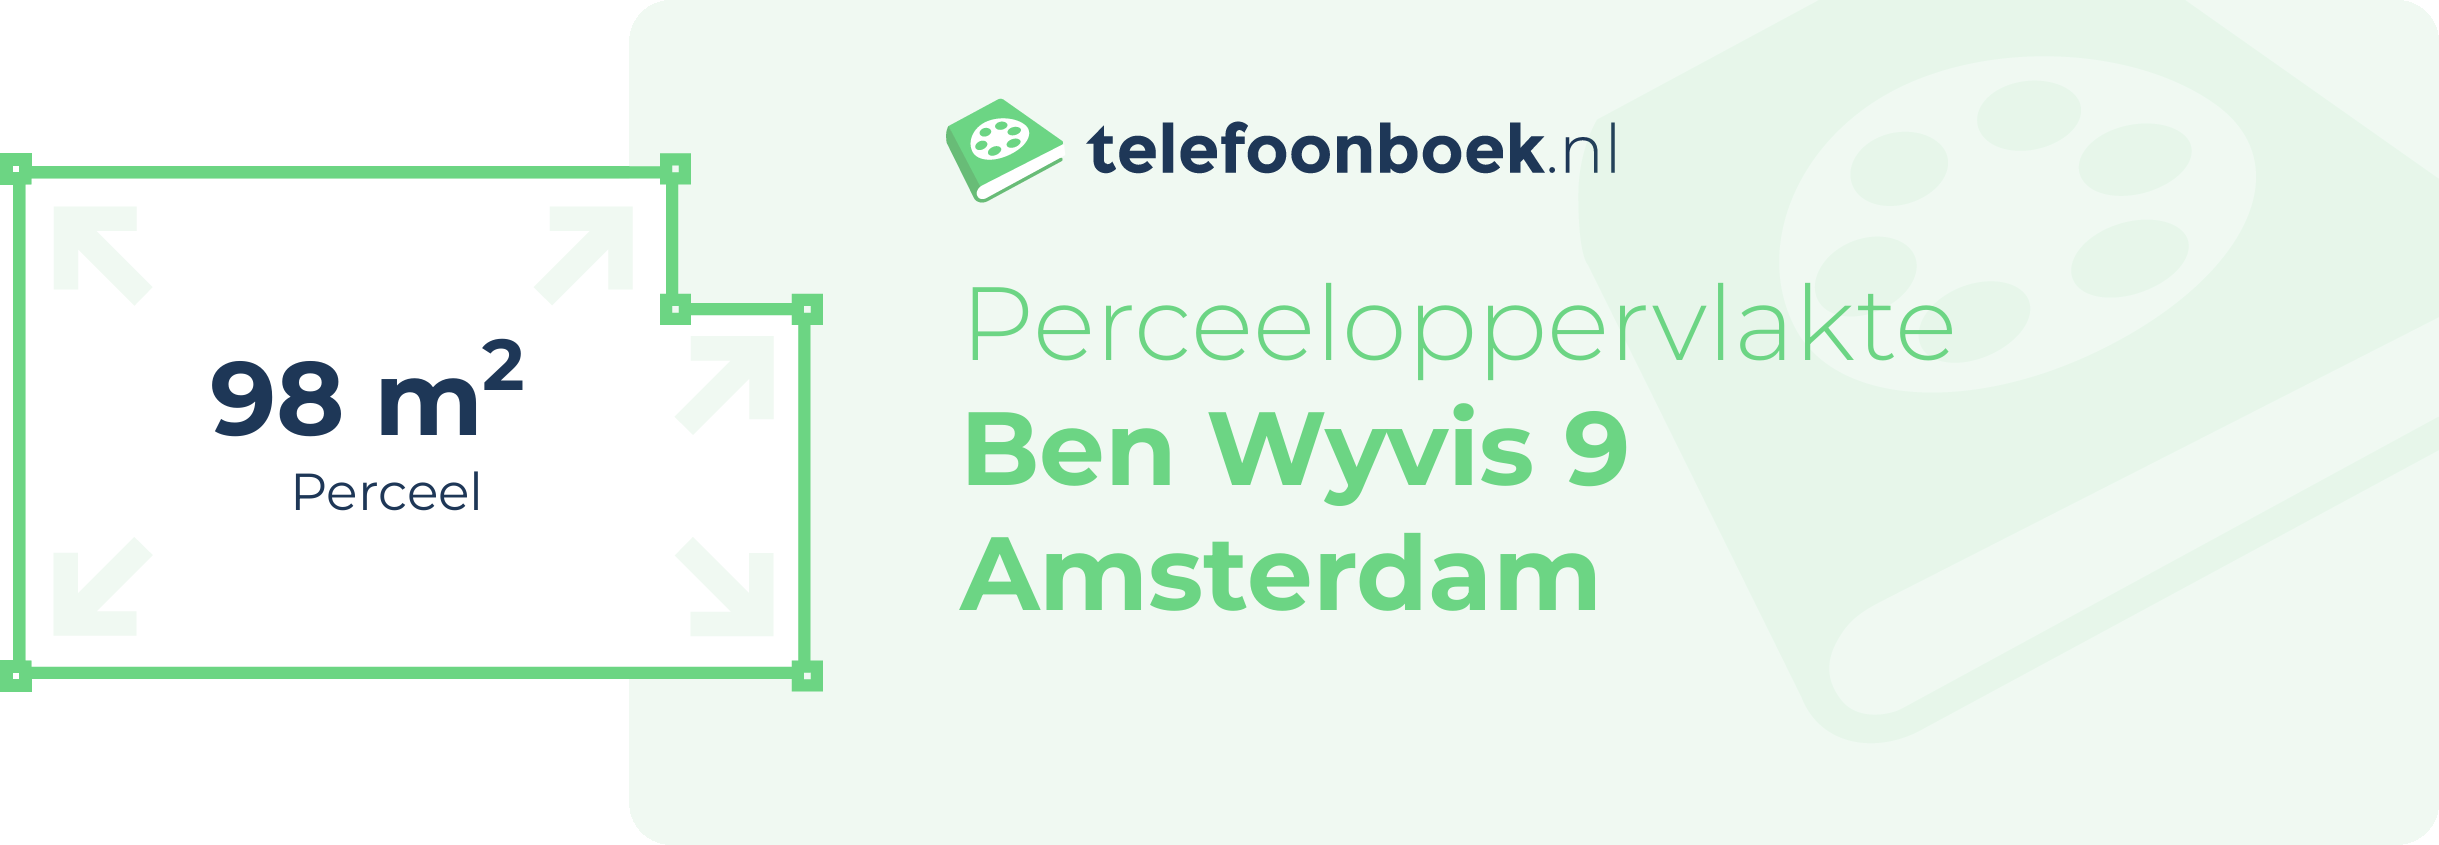 Perceeloppervlakte Ben Wyvis 9 Amsterdam